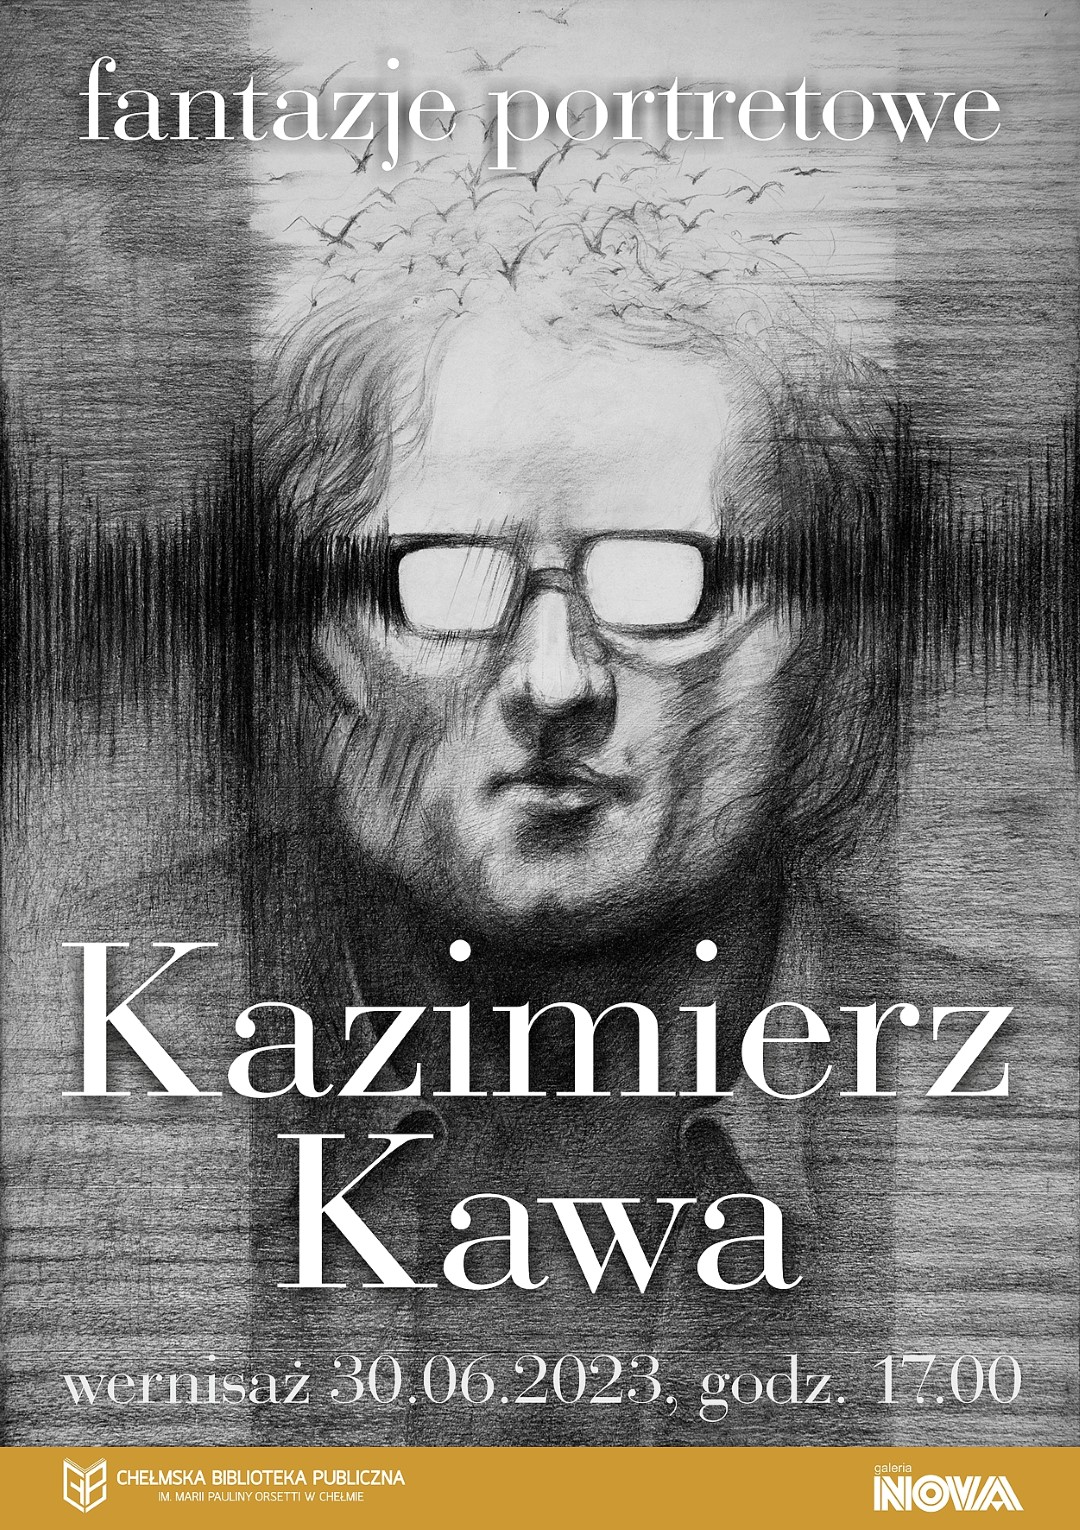 Plakat wernisażu wystawy fantazje portretowe Kazimierza Kawy